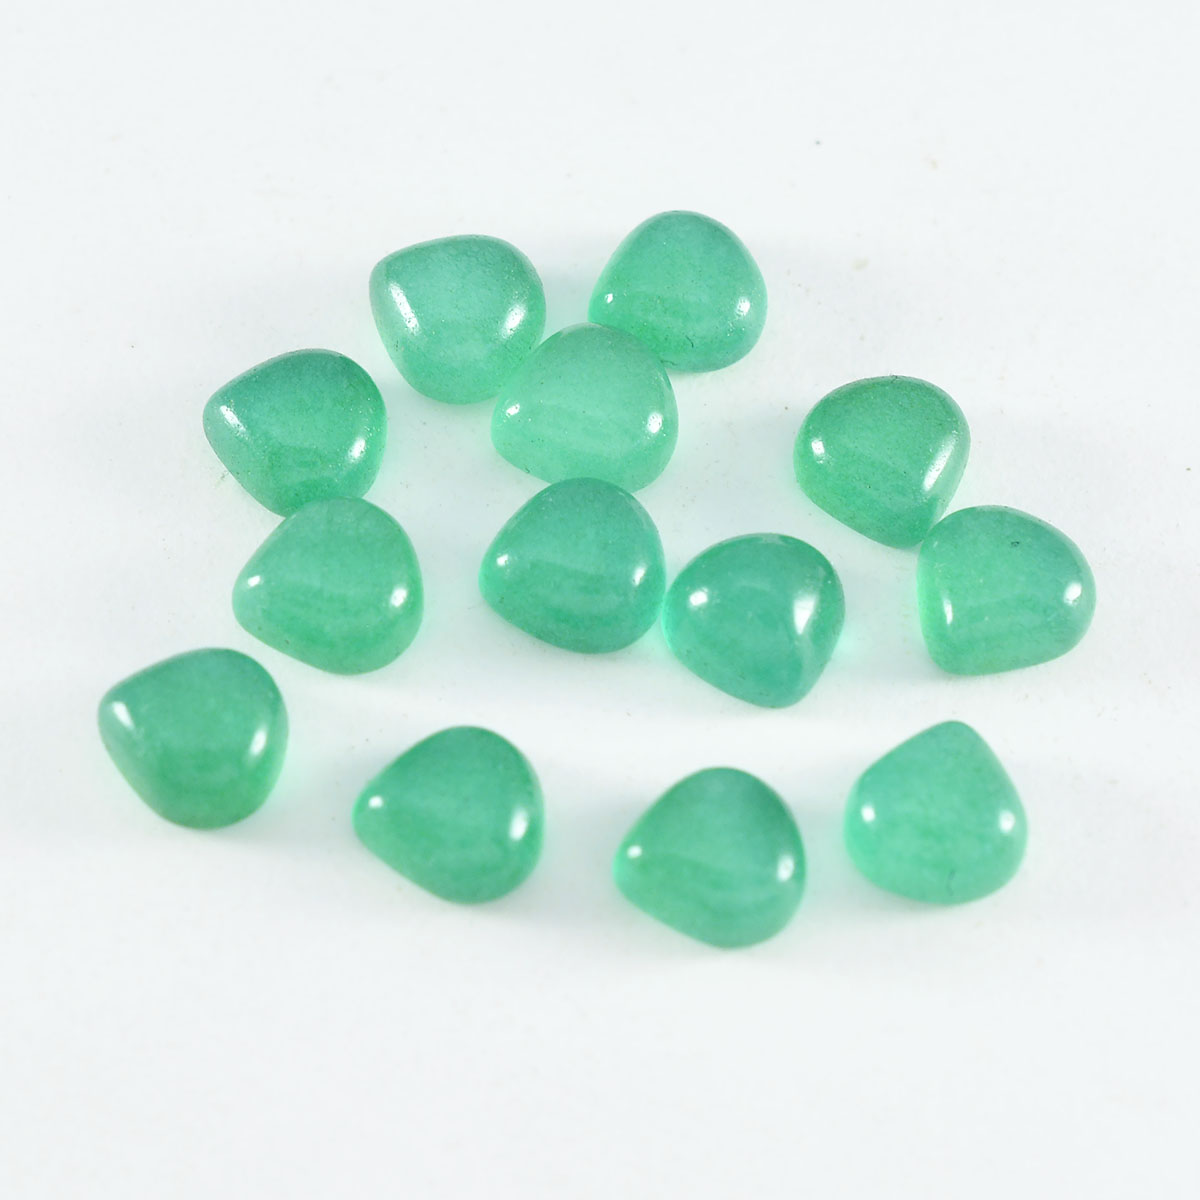 Riyogems 1 Stück grüner Onyx-Cabochon, 6 x 6 mm, Herzform, schöner, hochwertiger loser Stein